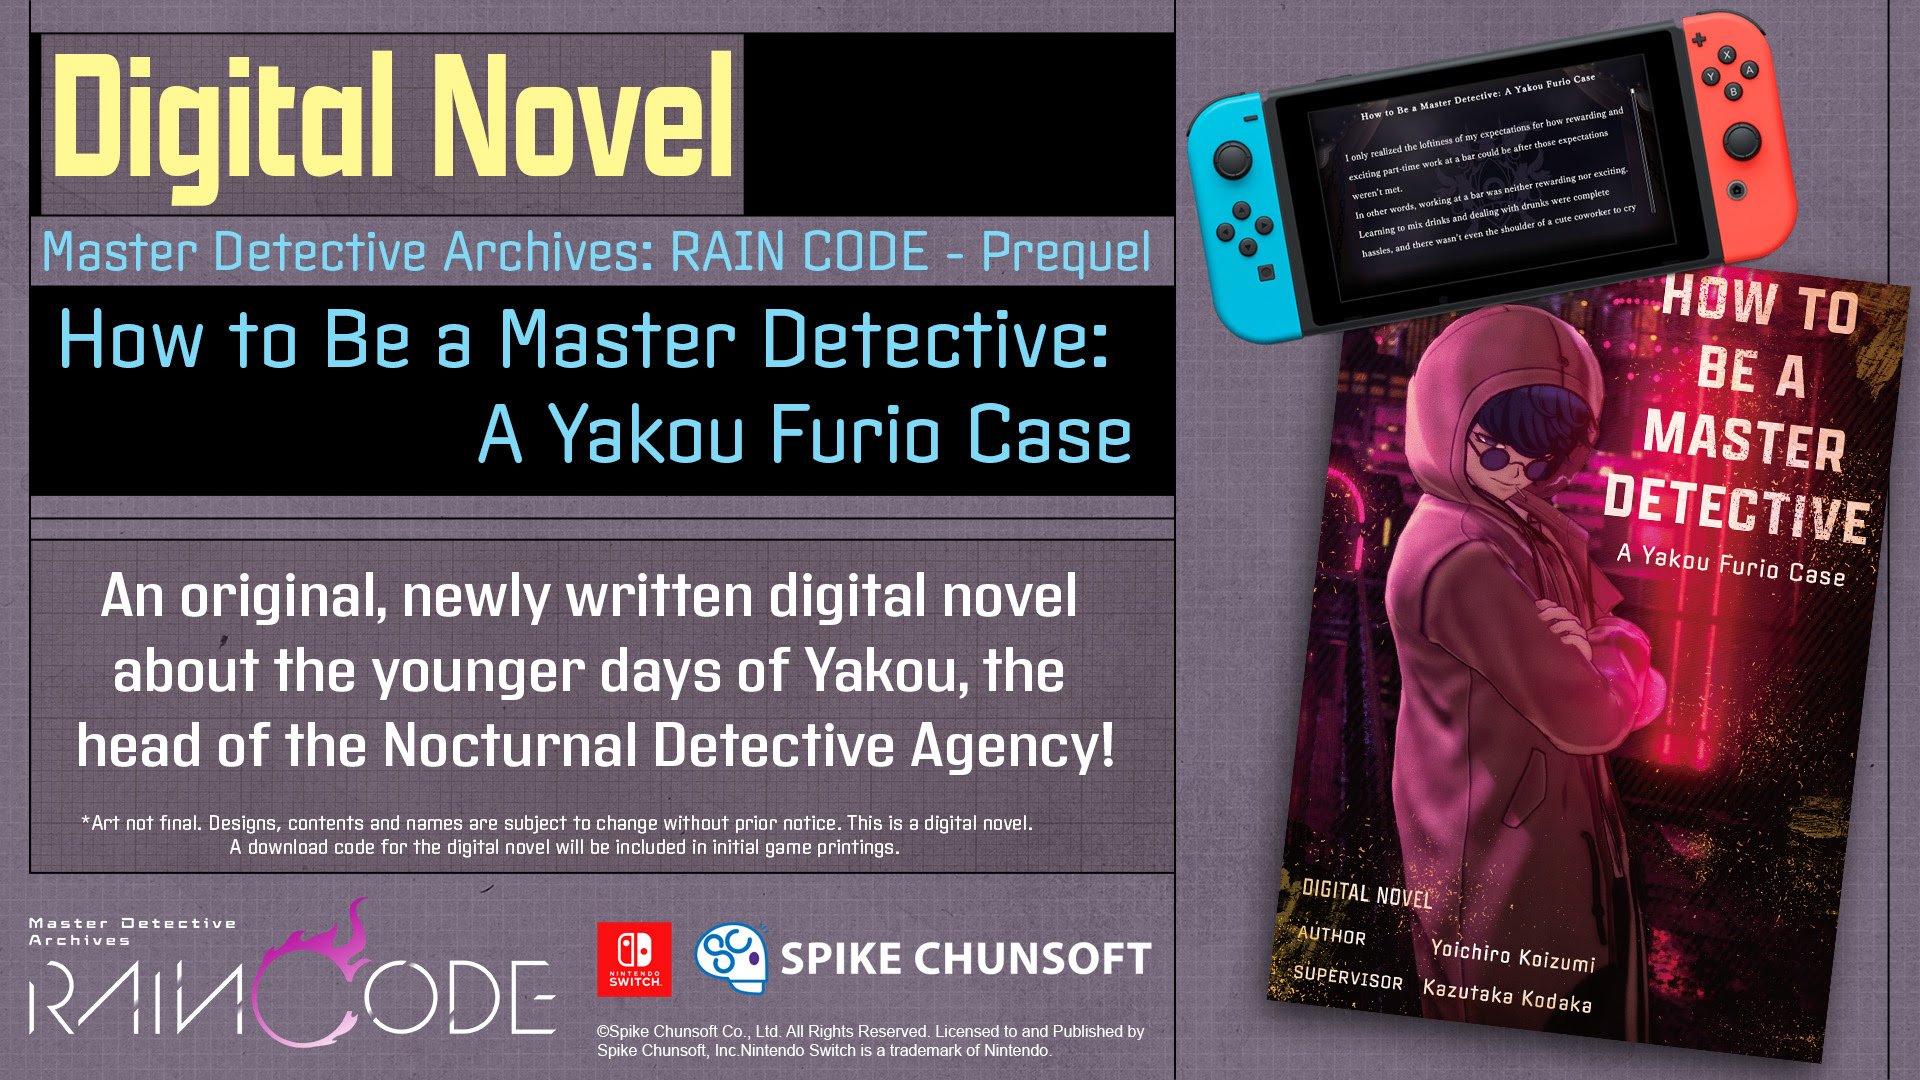 Master Detective Archives: RAIN CODE bonus digital novel detailed